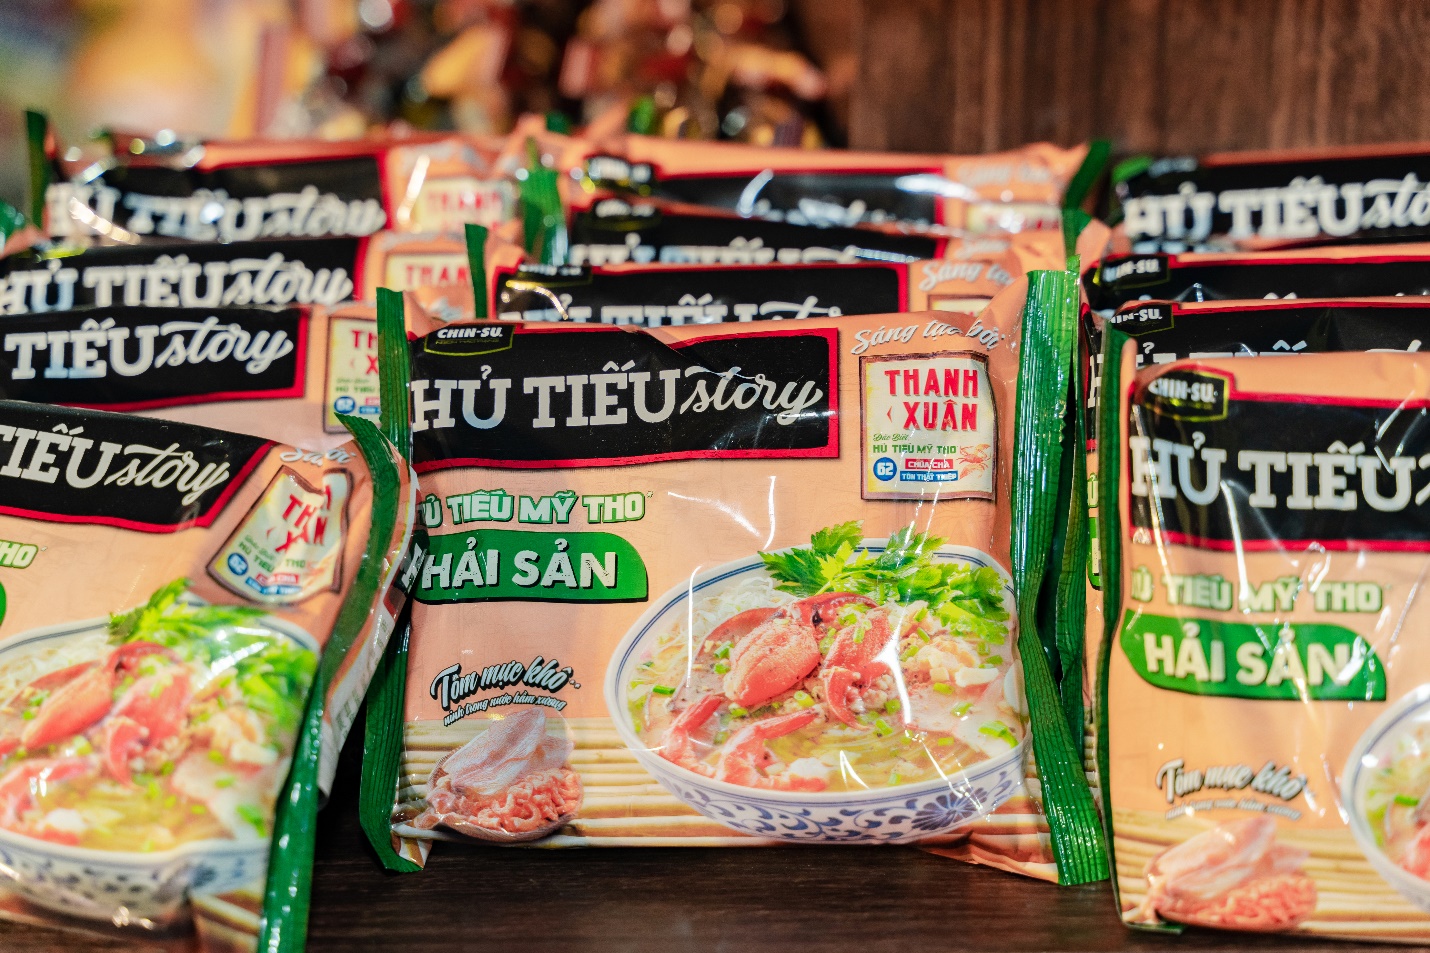 CHIN-SU mang Hủ tiếu Mỹ Tho vào gói ăn liền, giữ trọn hương vị đặc trưng Nam Bộ - Ảnh 1.